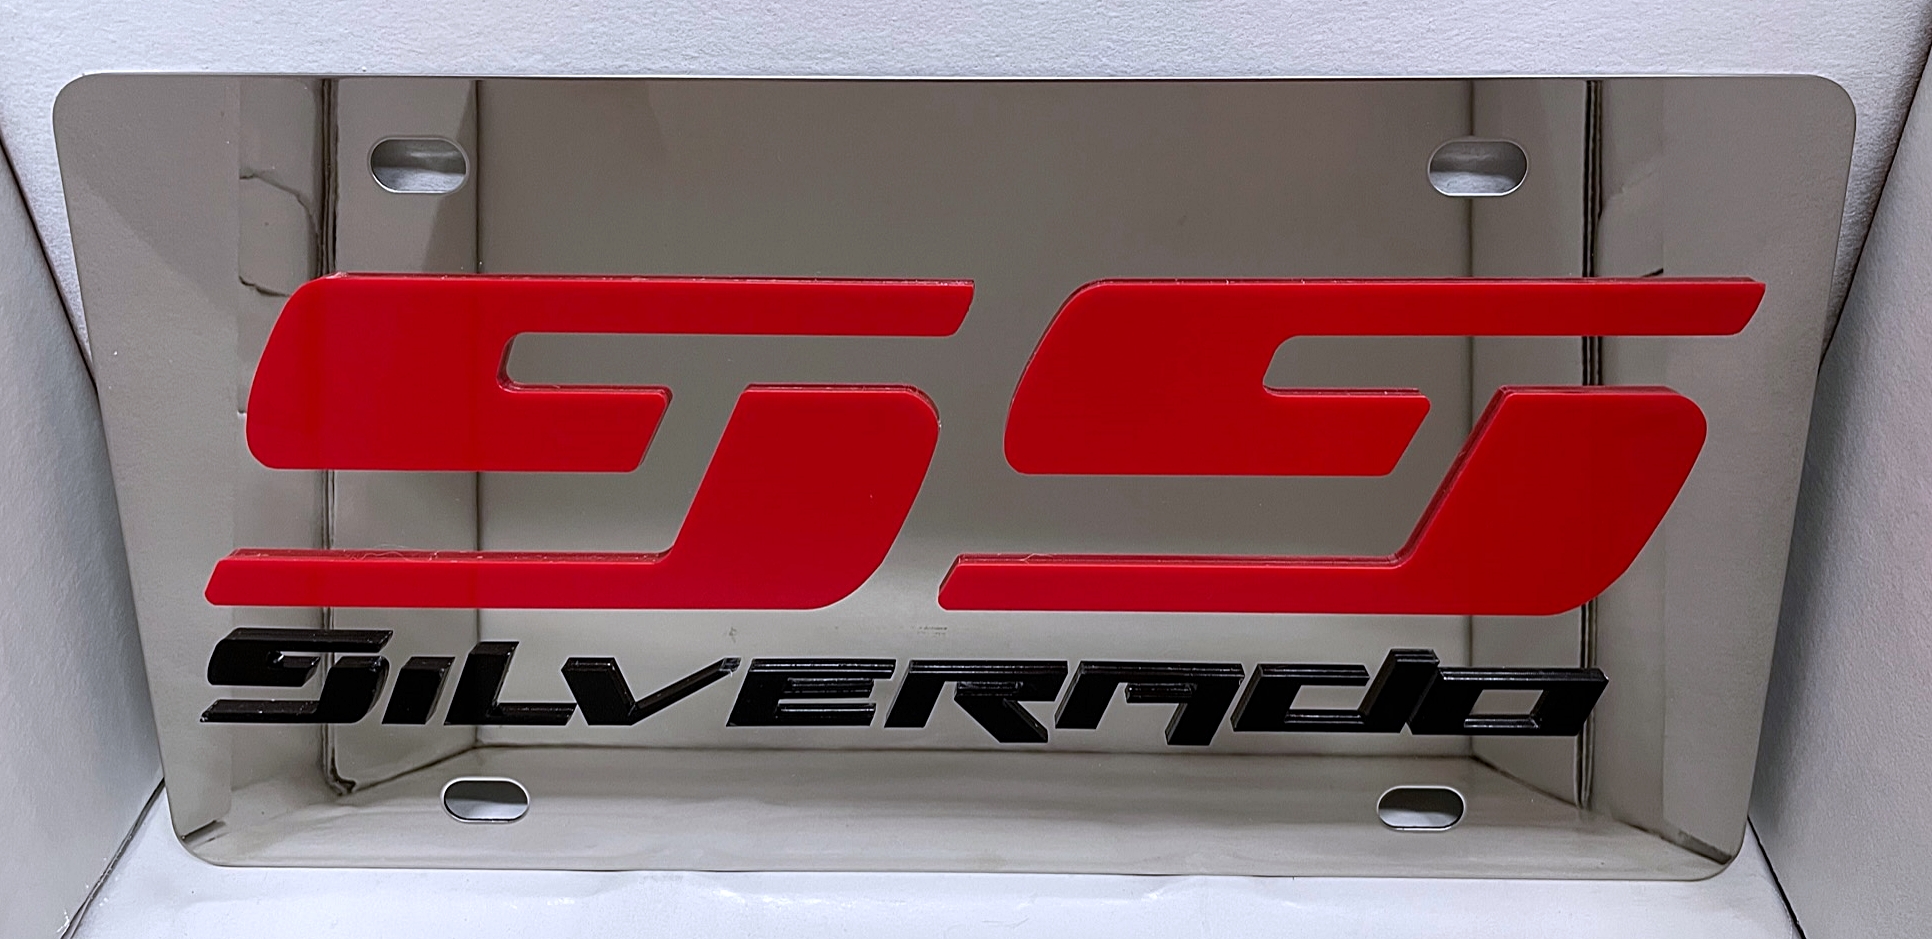 Chevrolet Silverado Super Sport stainless licen...